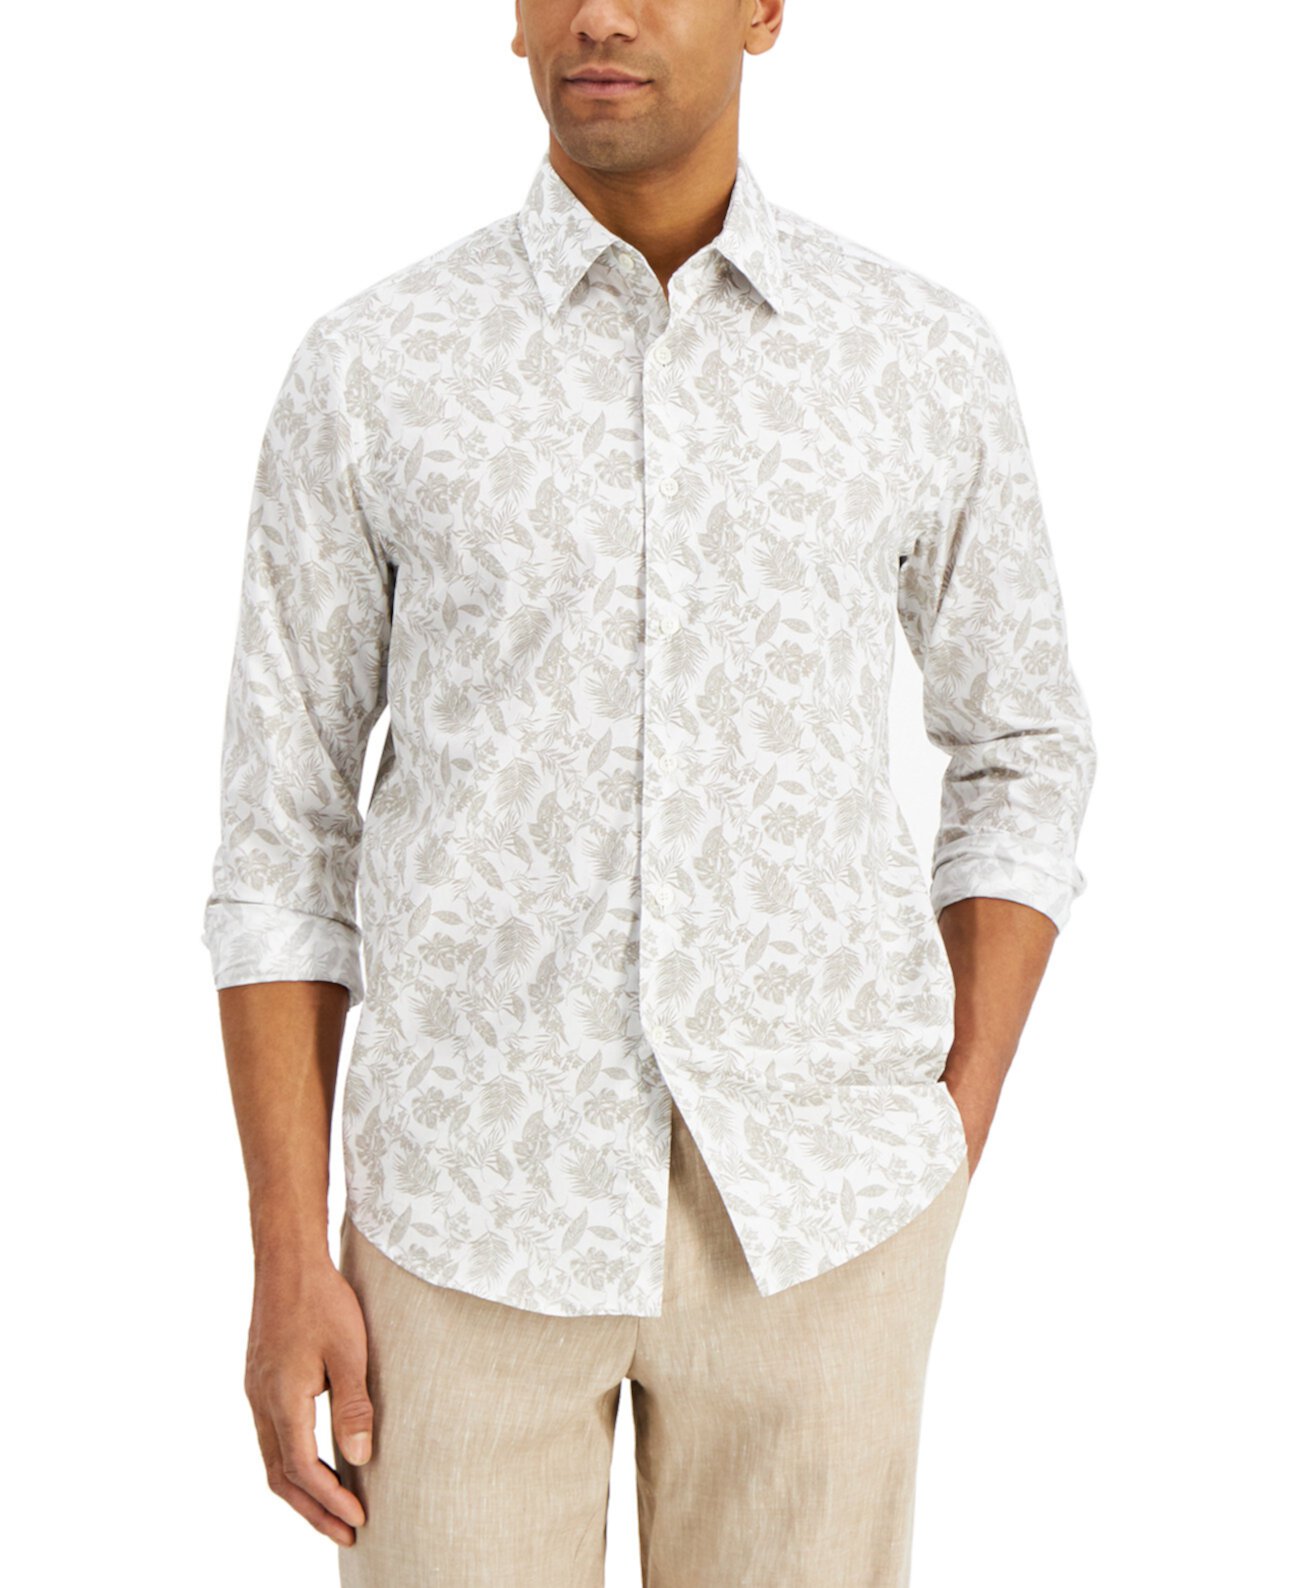 Мужская хлопковая рубашка с принтом листьев Suolo, созданная для Macy's Tasso Elba